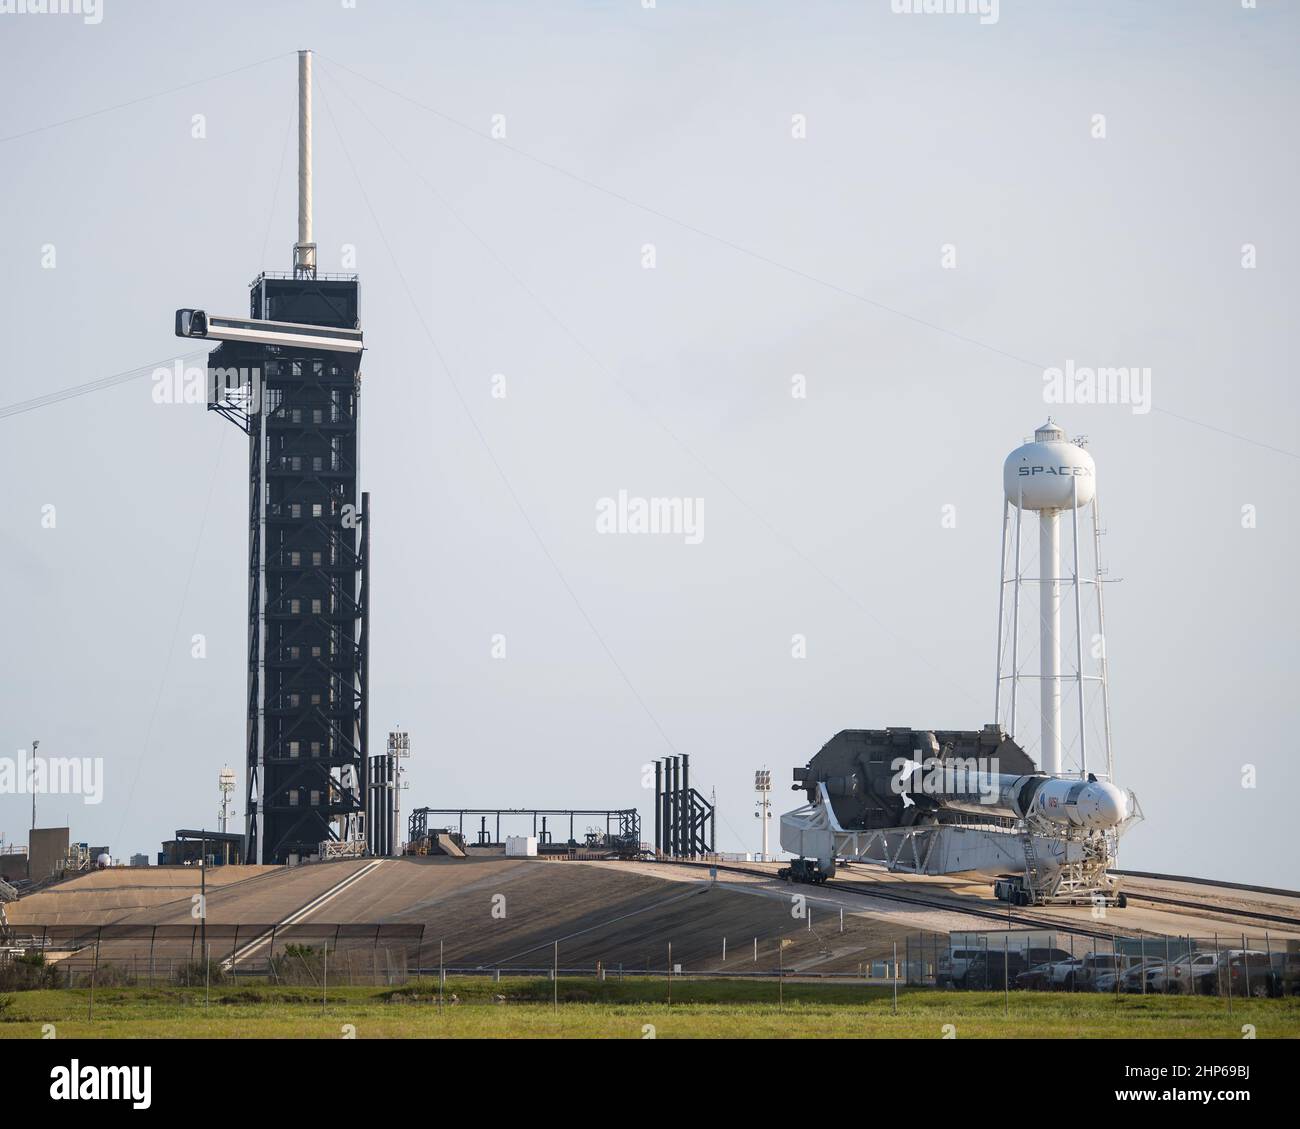 Un cohete SpaceX Falcon 9 con la nave espacial Crew Dragon de la compañía a bordo se ve como se enrolla para lanzar el Complejo 39A mientras continúan los preparativos para la misión Crew-2, el viernes 16 de abril de 2021, en el Centro Espacial Kennedy de la NASA en Florida. Foto de stock